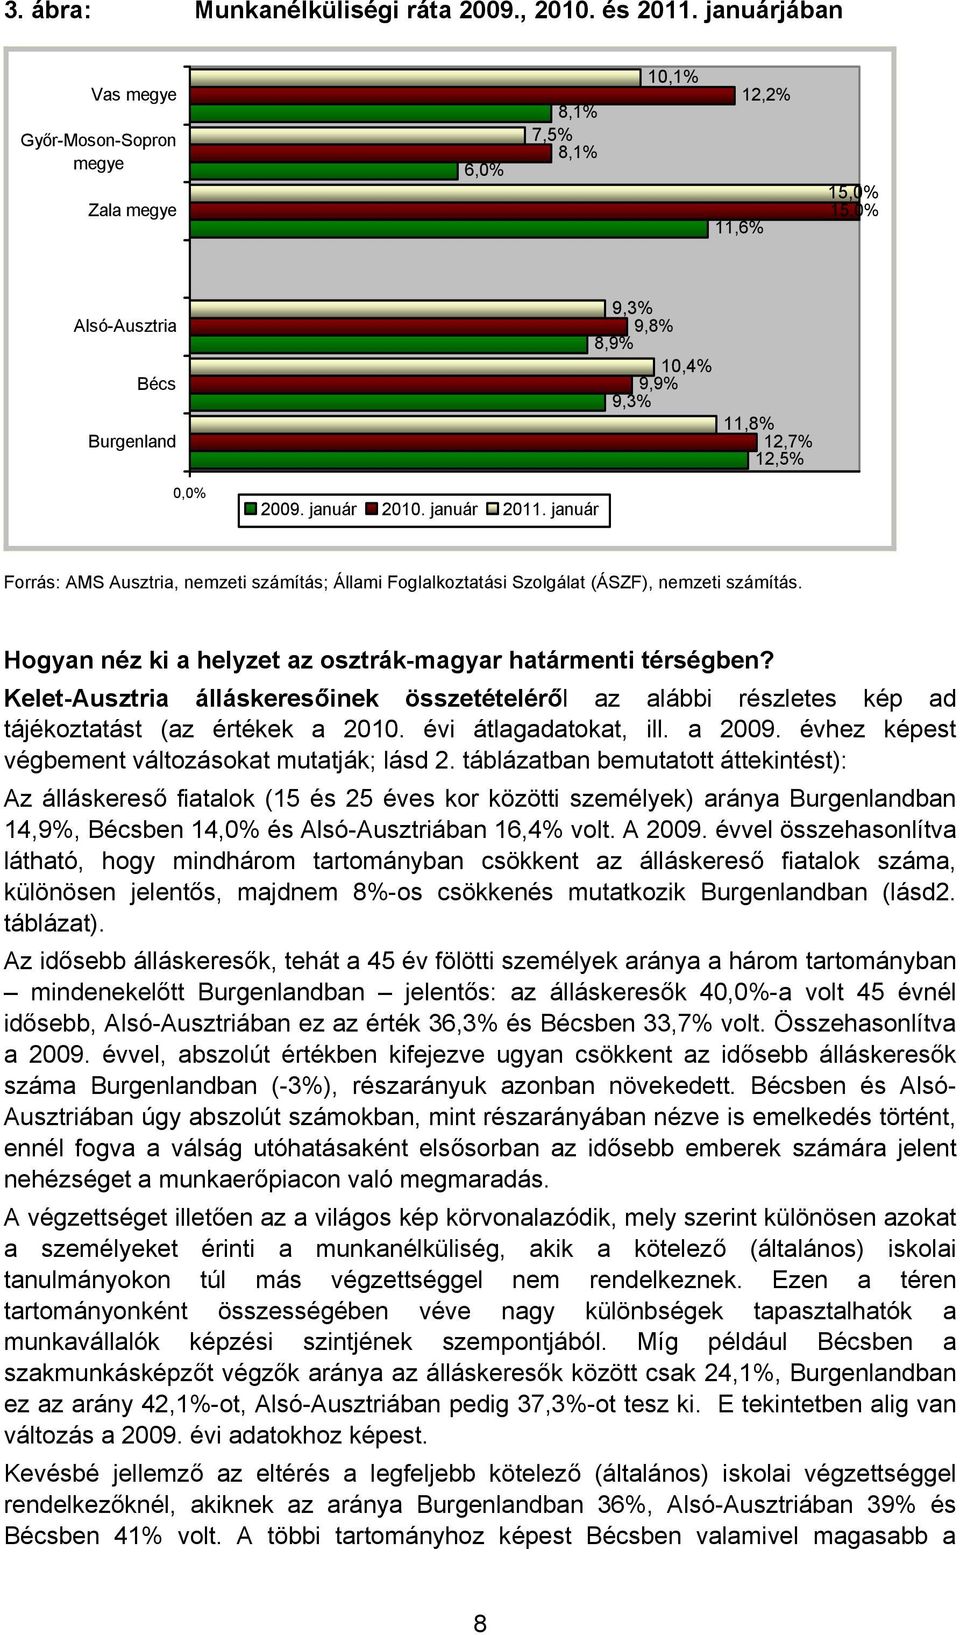 január 2011. január 11,8% 12,7% 12,5% Forrás: AMS Ausztria, nemzeti számítás; Állami Foglalkoztatási Szolgálat (ÁSZF), nemzeti számítás. Hogyan néz ki a helyzet az osztrák-magyar határmenti térségben?